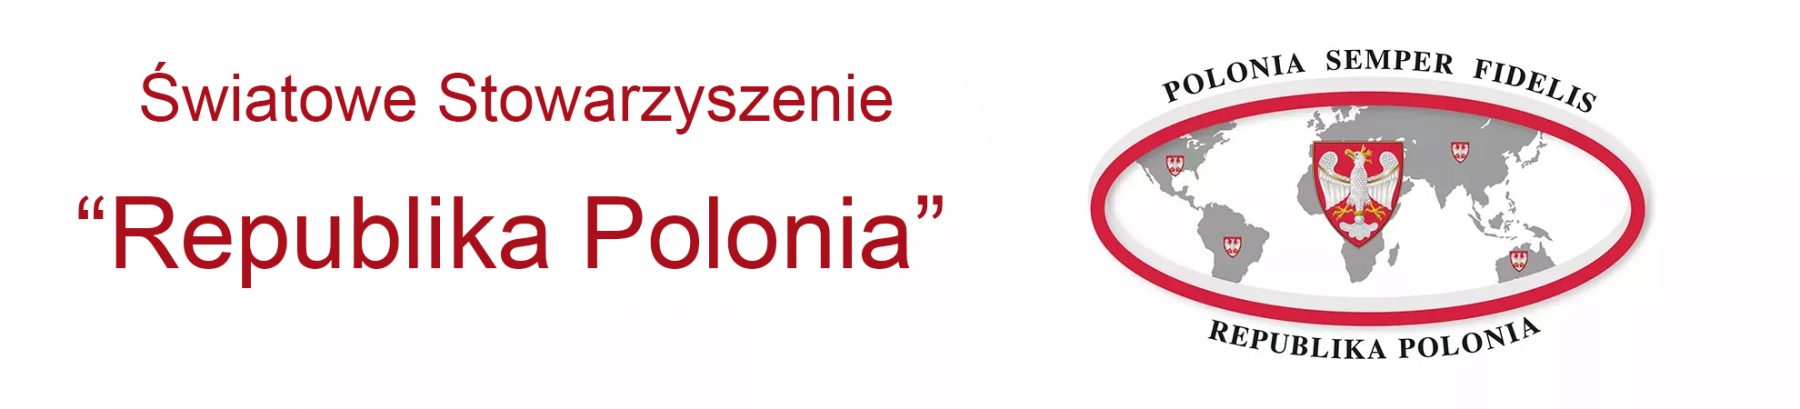 Światowe Stowarzyszenie "Republika Polonia"